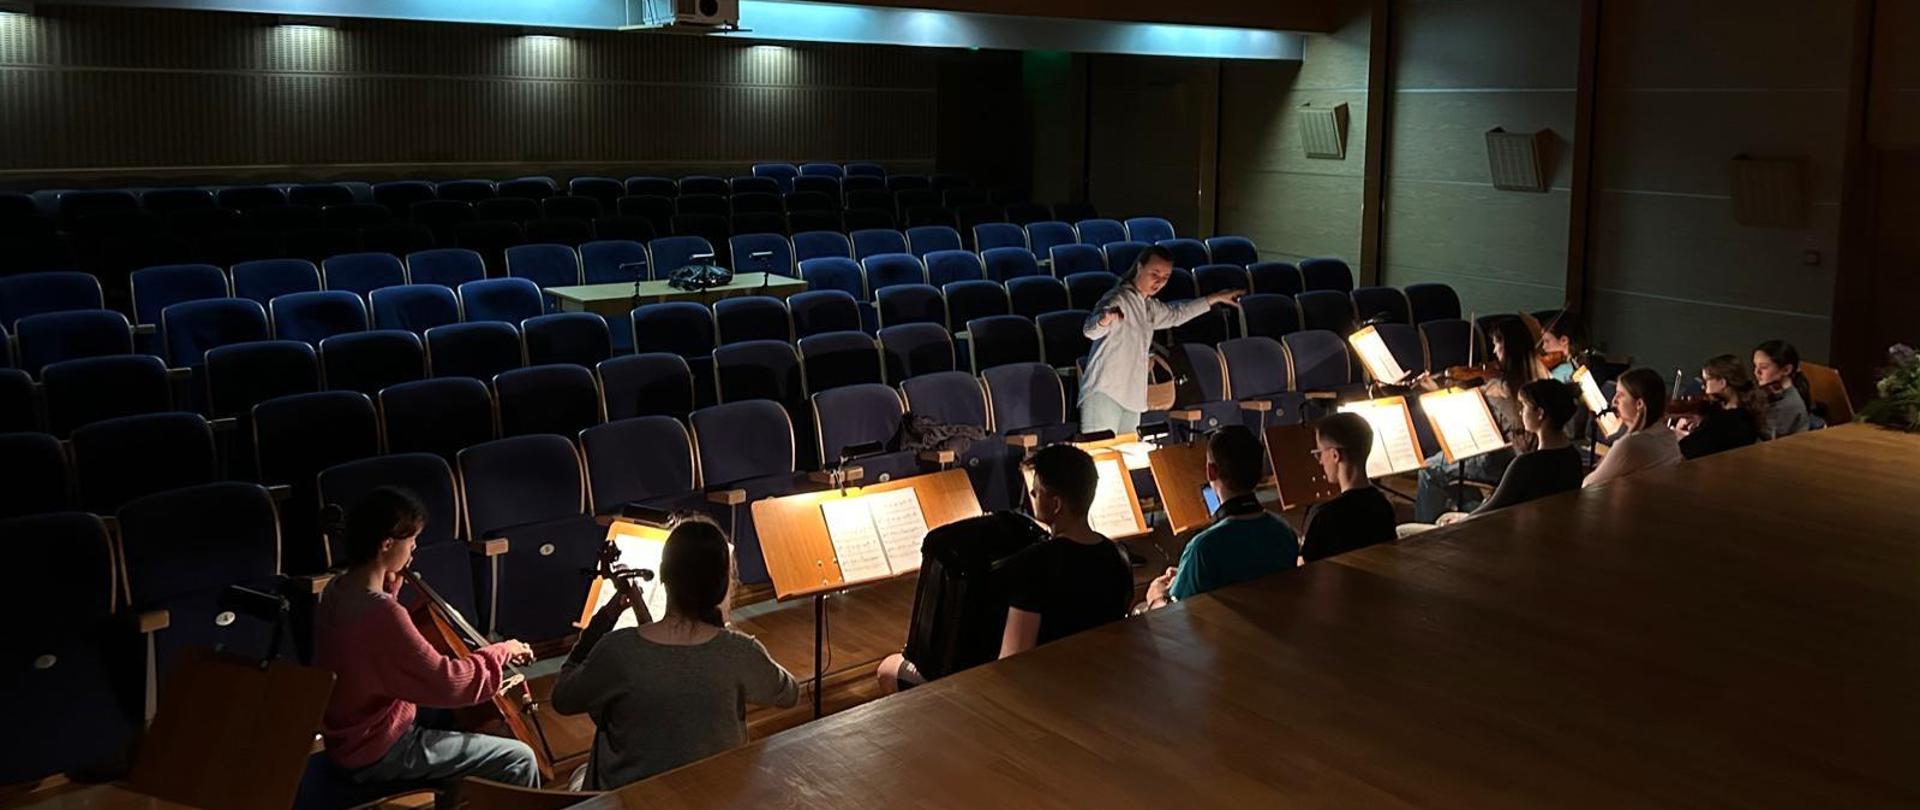 Ujęcie ze sceny - orkiestra ma przy pulpitach zamontowane świecące lampki do nut